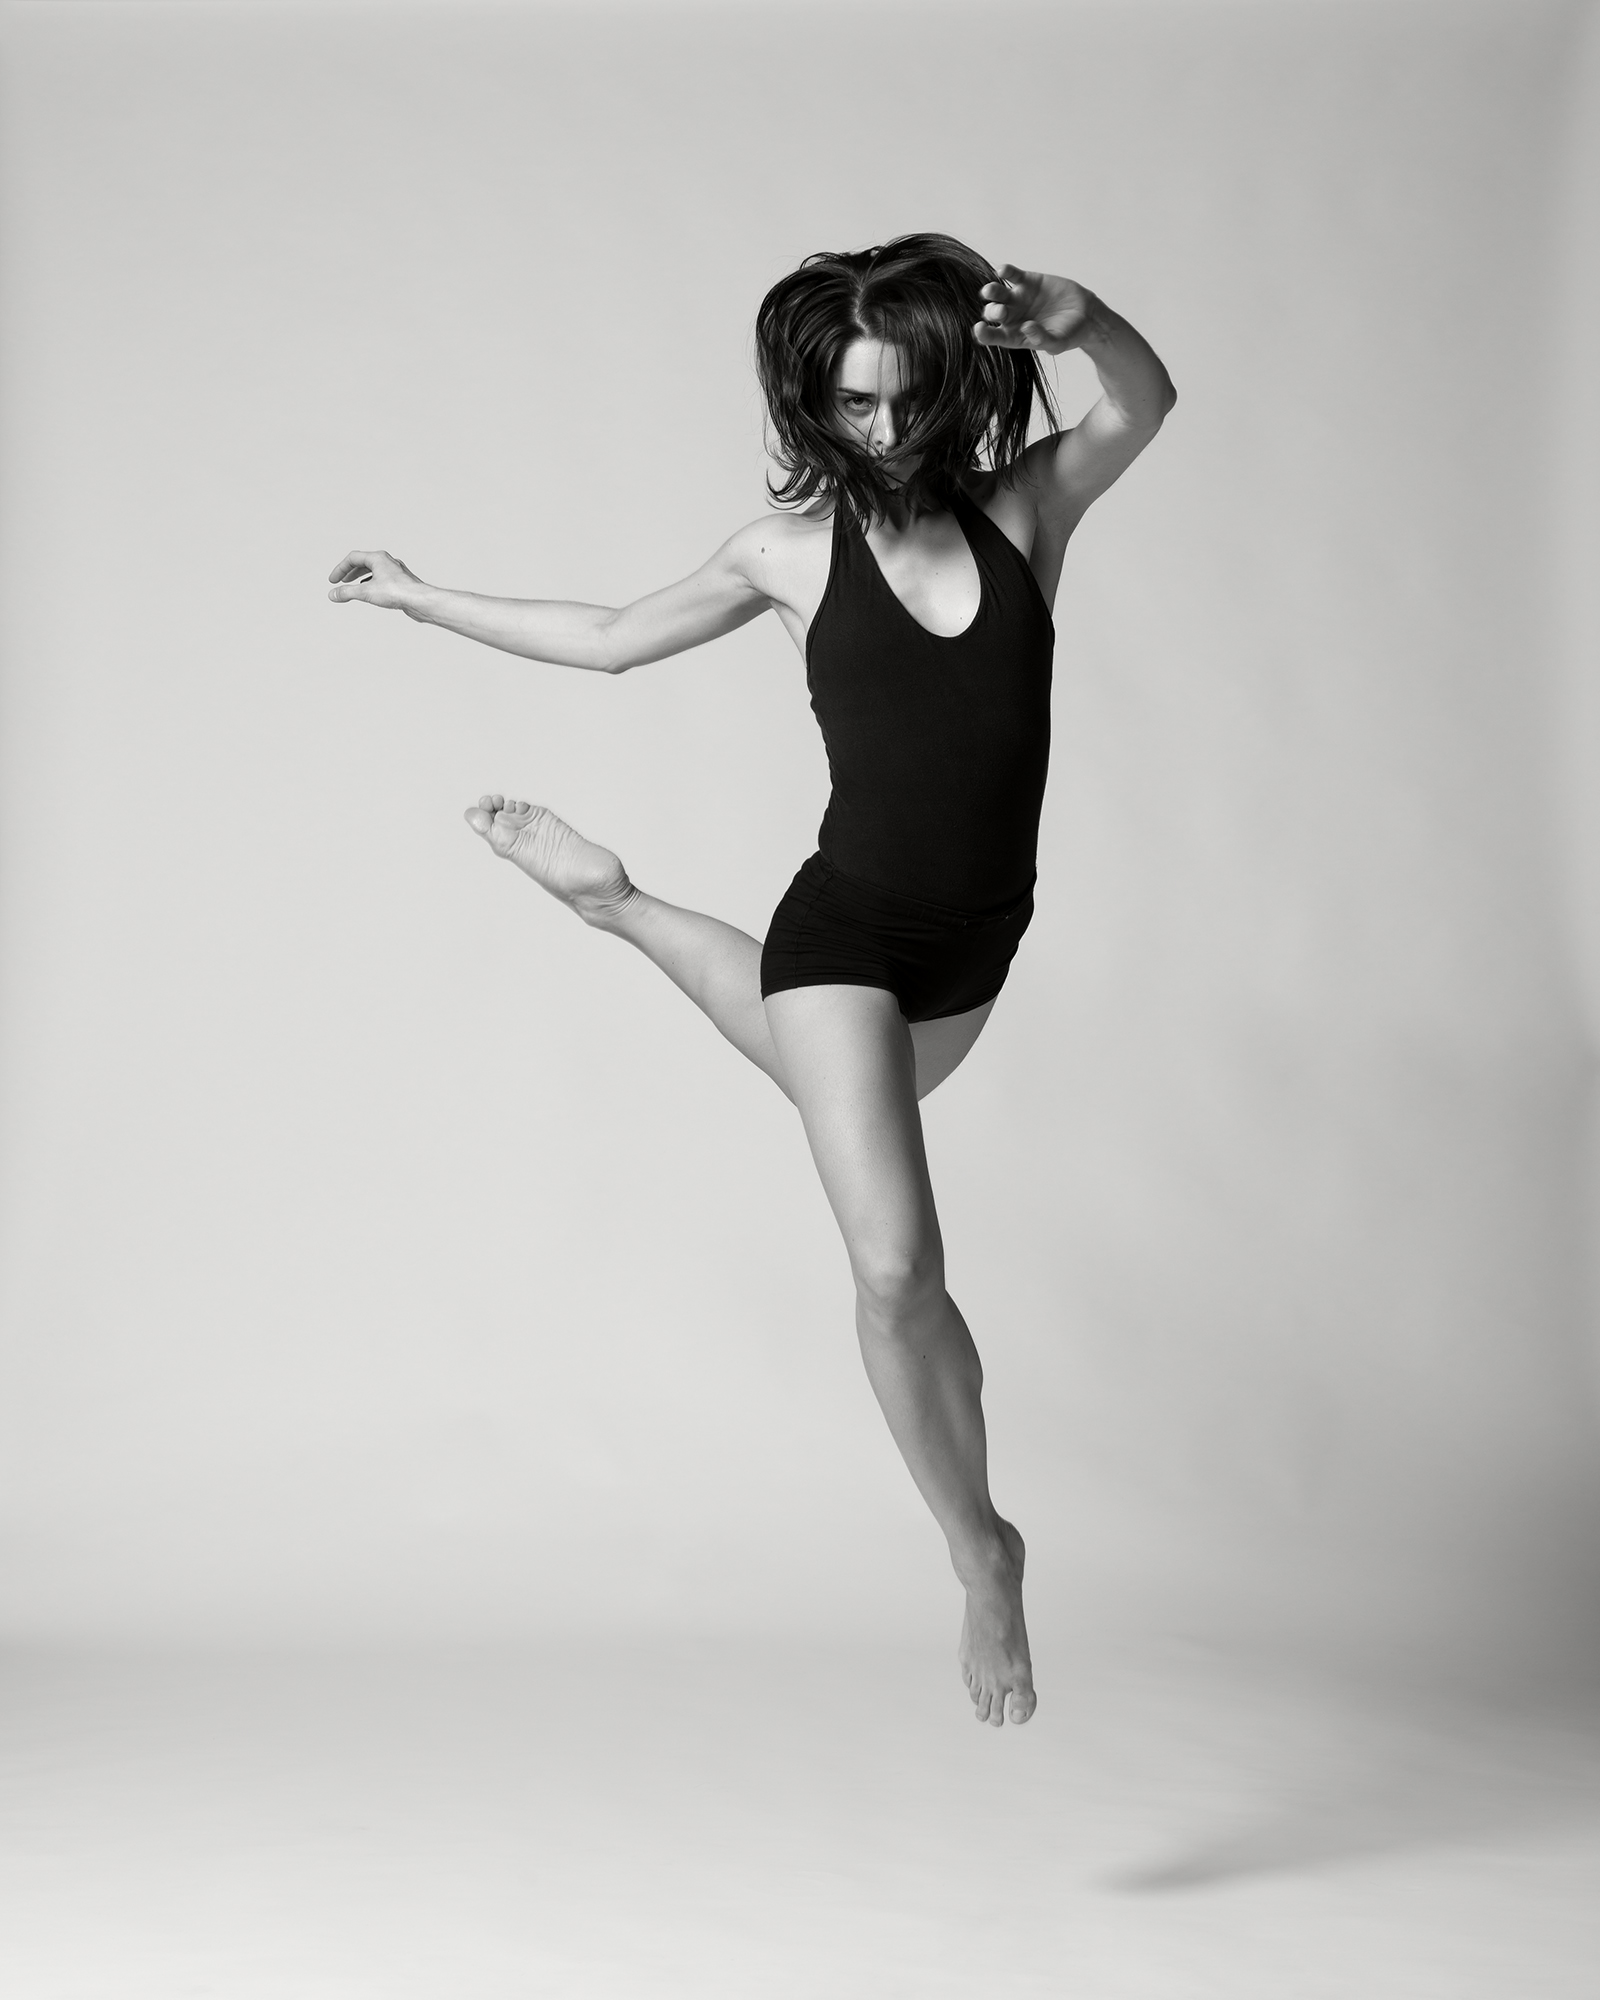 Simone-Schmidt-dancer